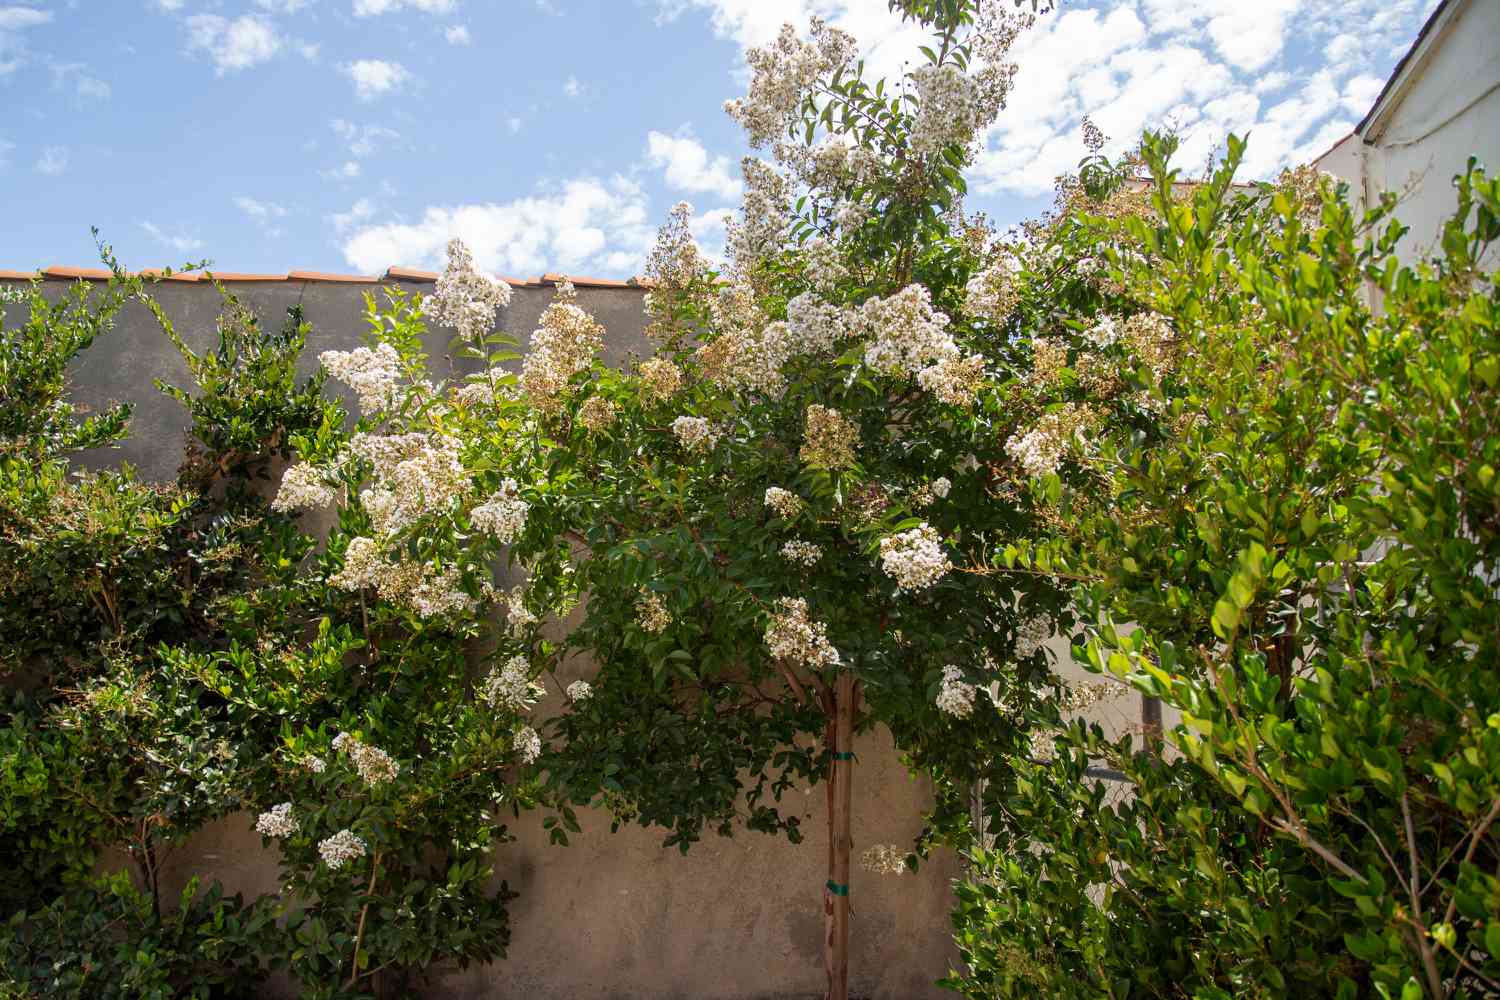 Tee-Olivenbaum in der Ecke des Hinterhofs mit weißen Blütenbüscheln im Sonnenlicht